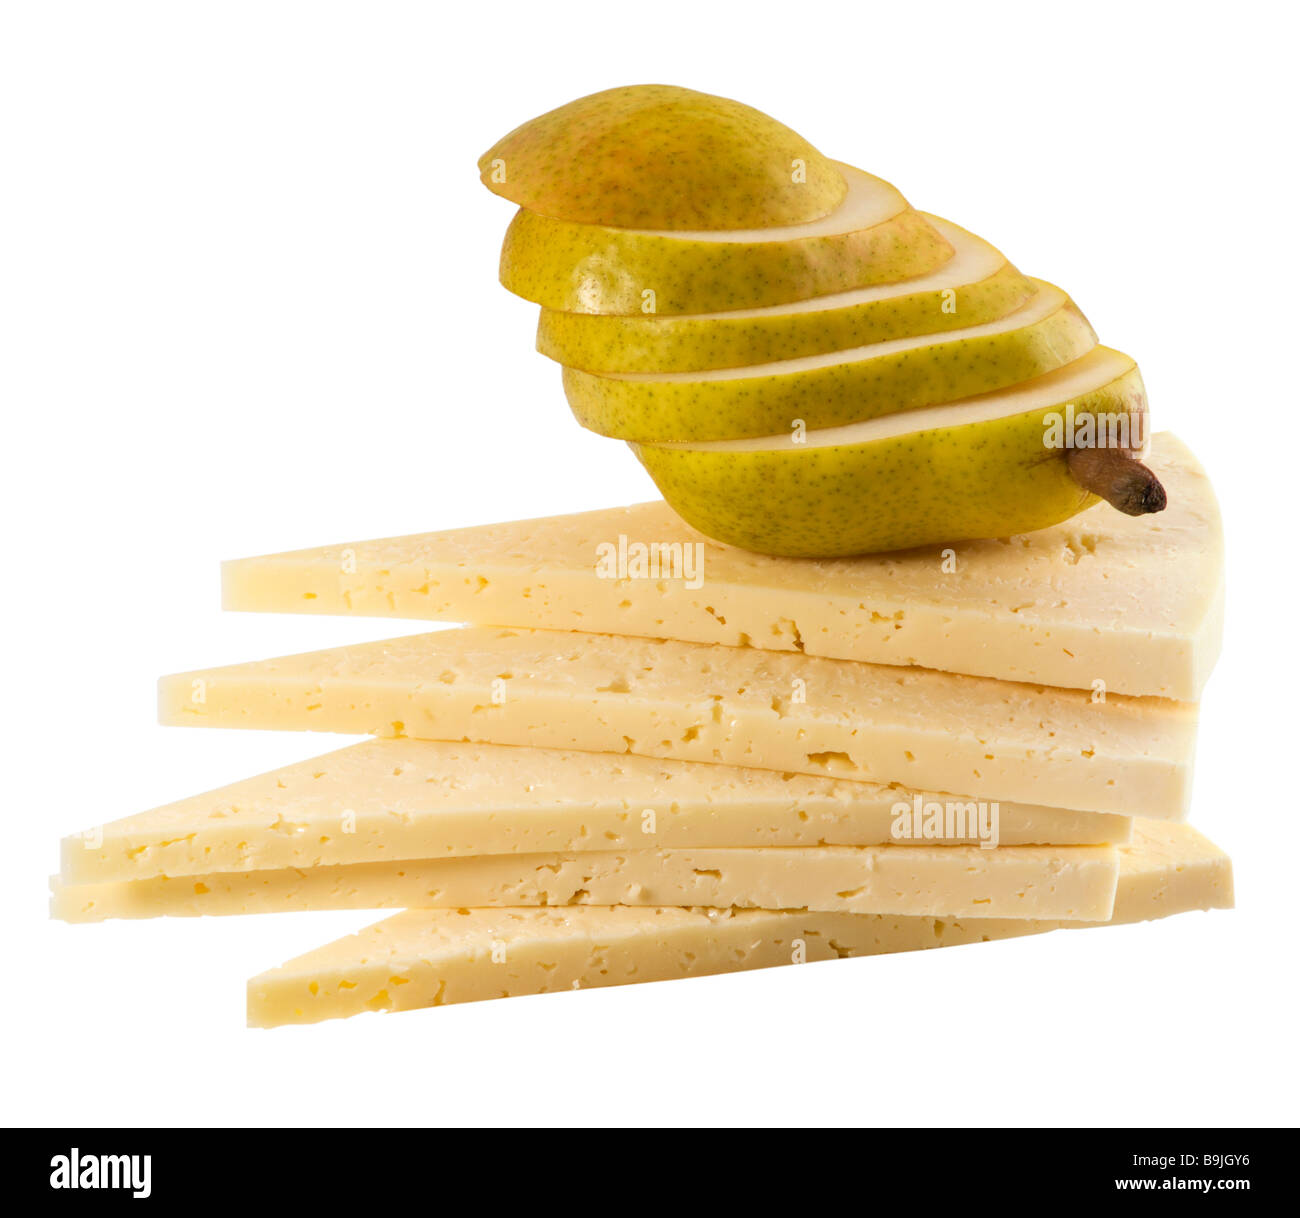 Le fromage de gruyère et de tranches de poire( +clipping path) Banque D'Images